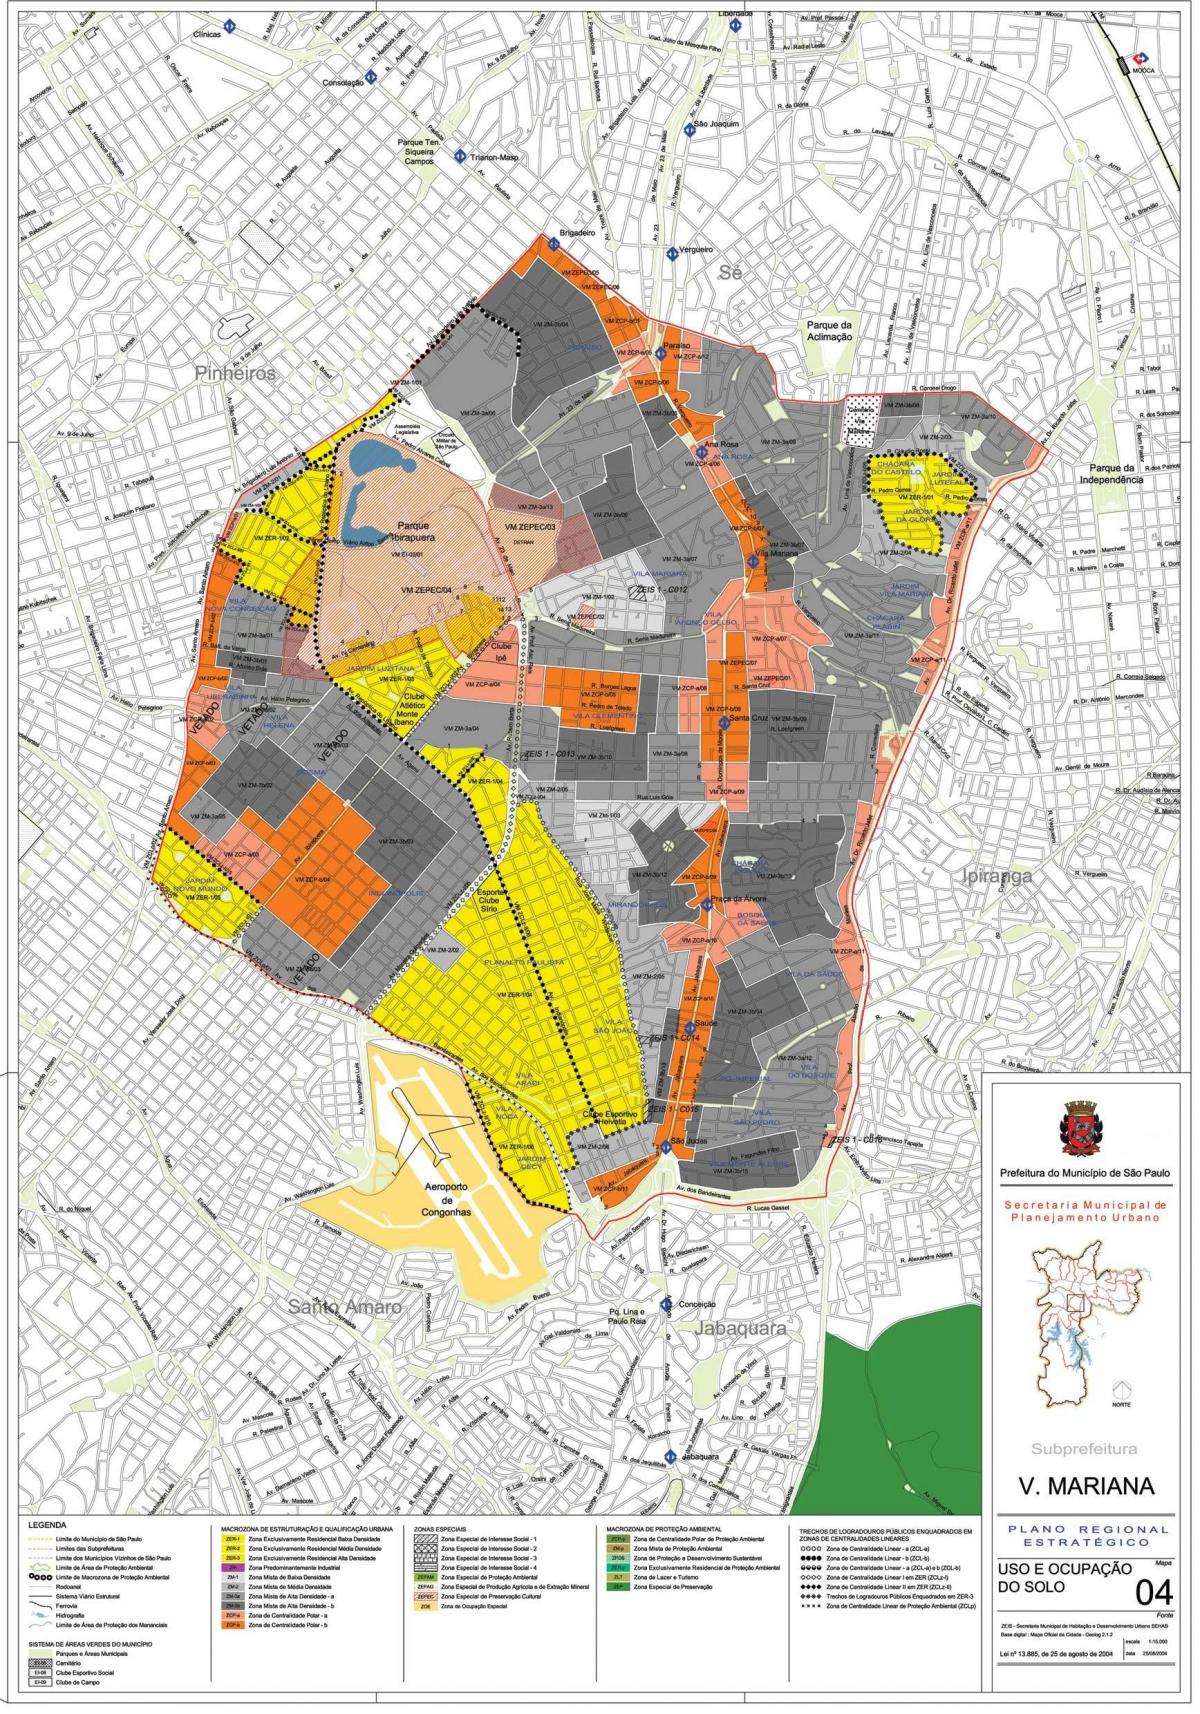 Mappa di Vila Mariana, São Paulo - Occupazione del suolo